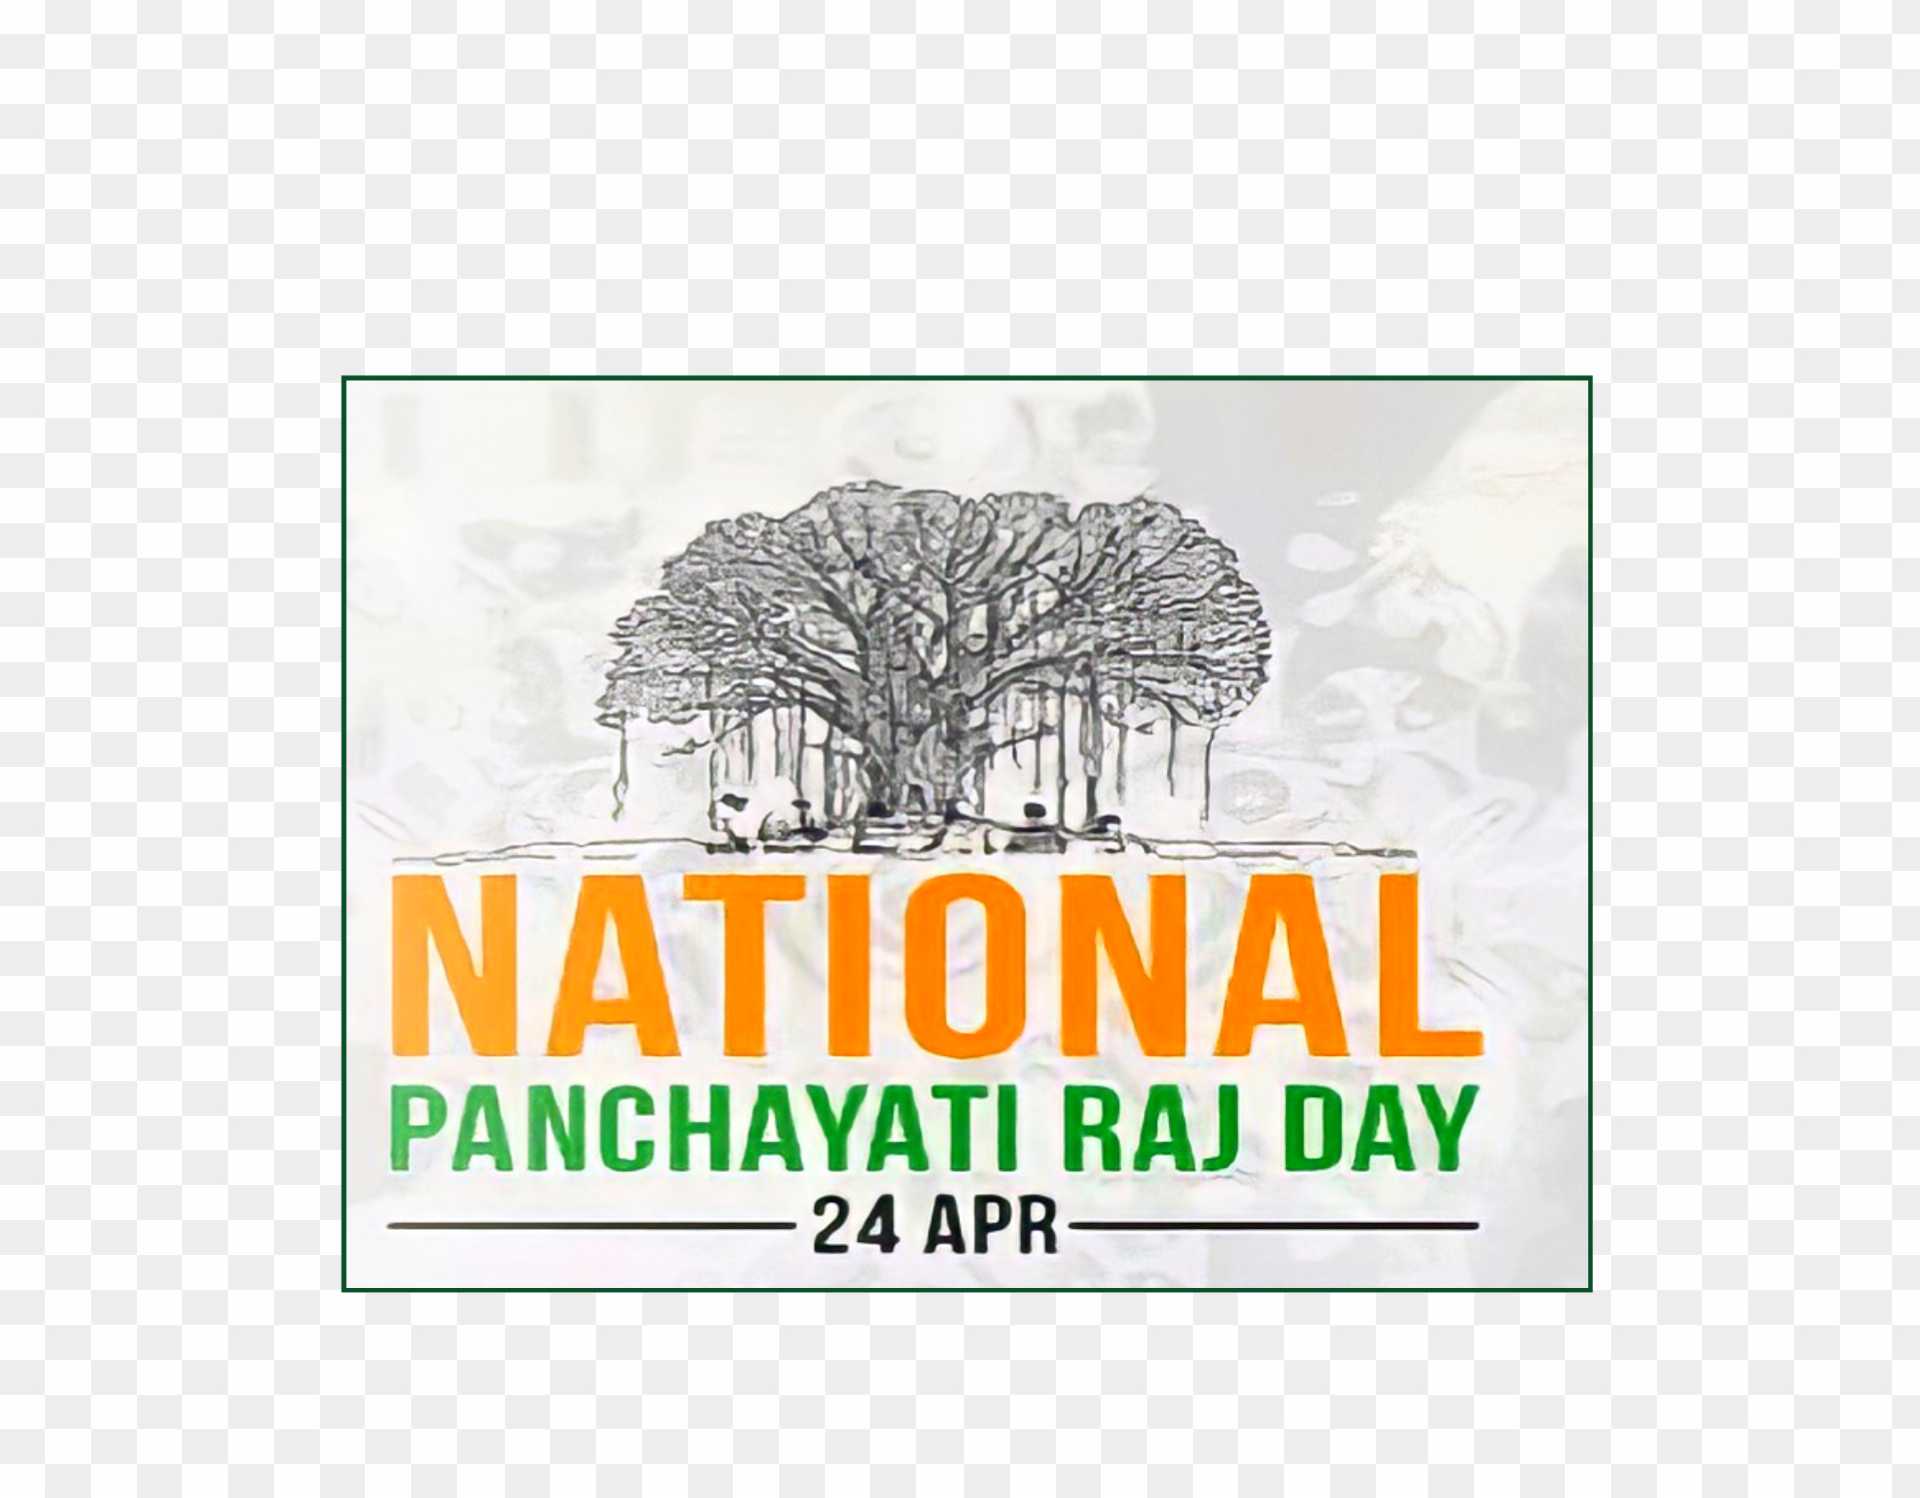 National Rashtriy panchayati Raj day png